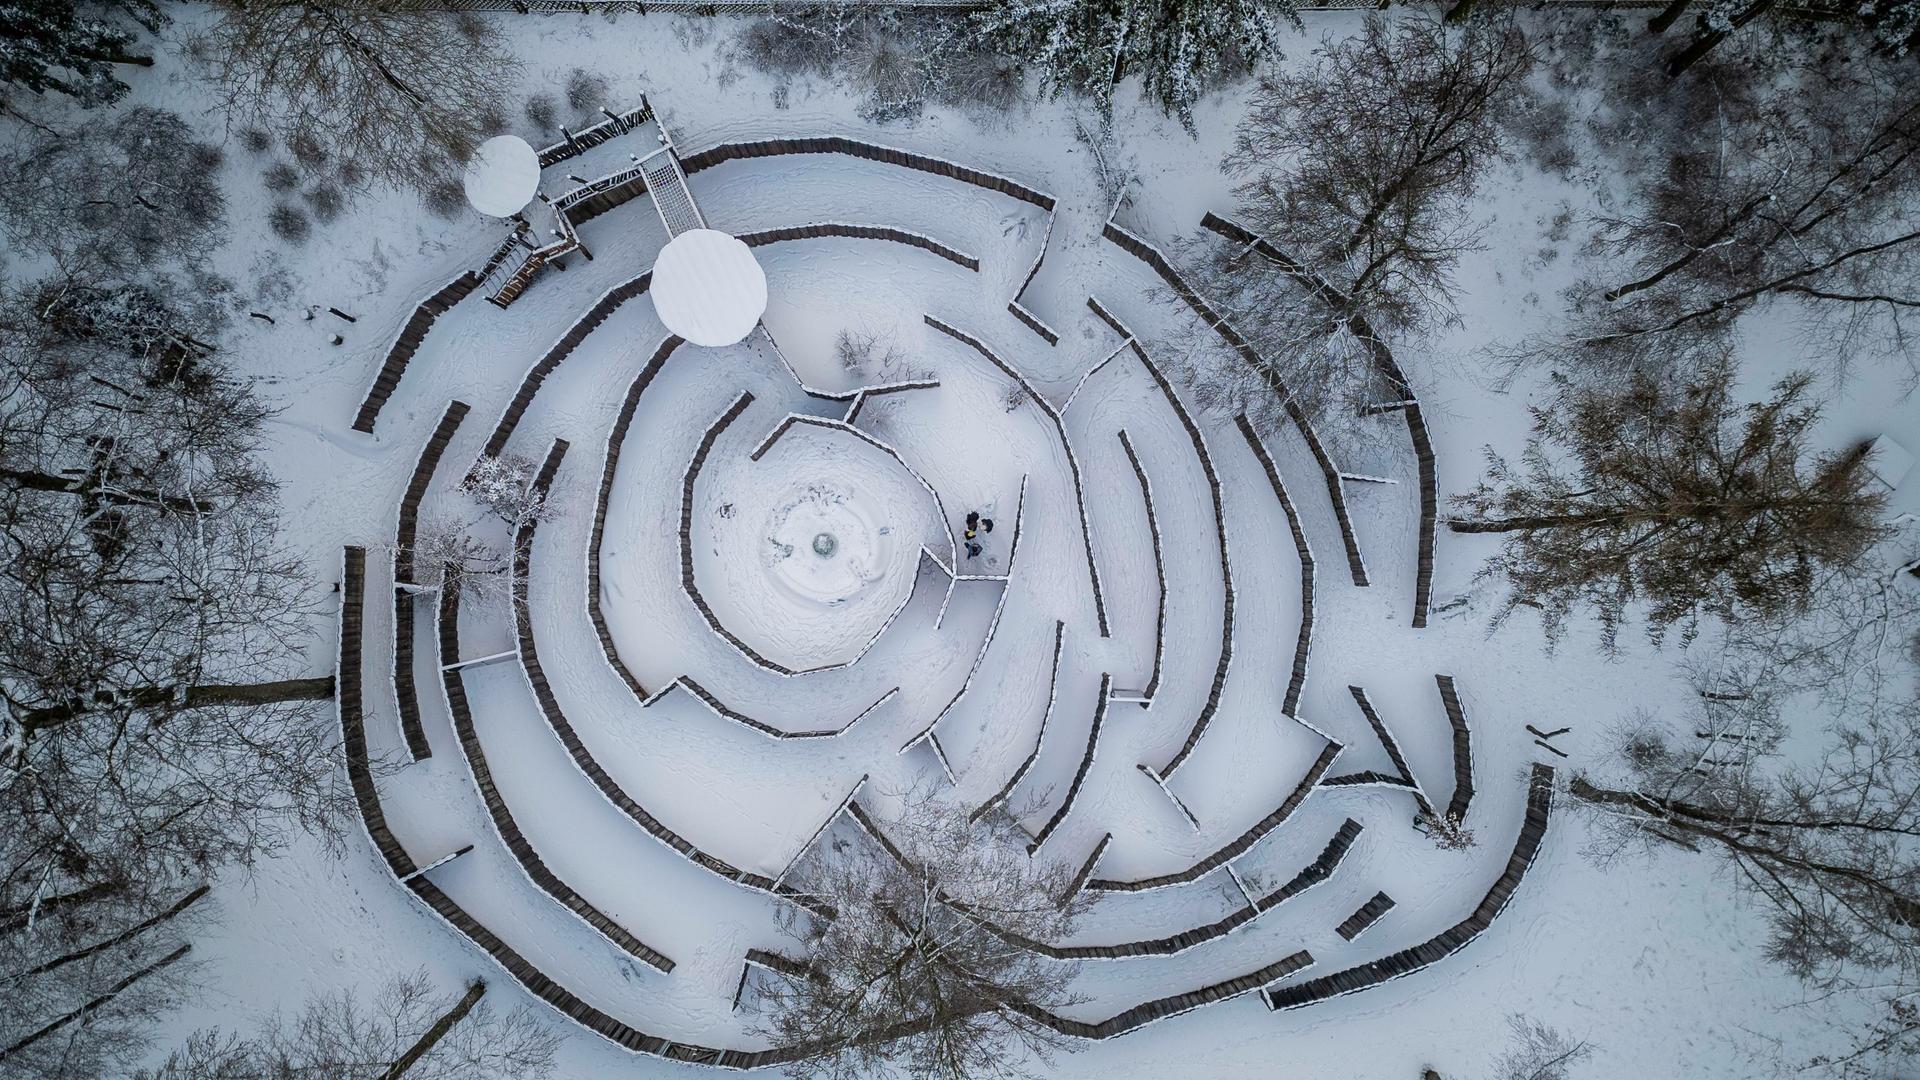 Das Labyrinth im Waldspielpark Goetheturm zeichnet sich im Schnee besonders gut ab. (Luftaufnahme mit Drohne)